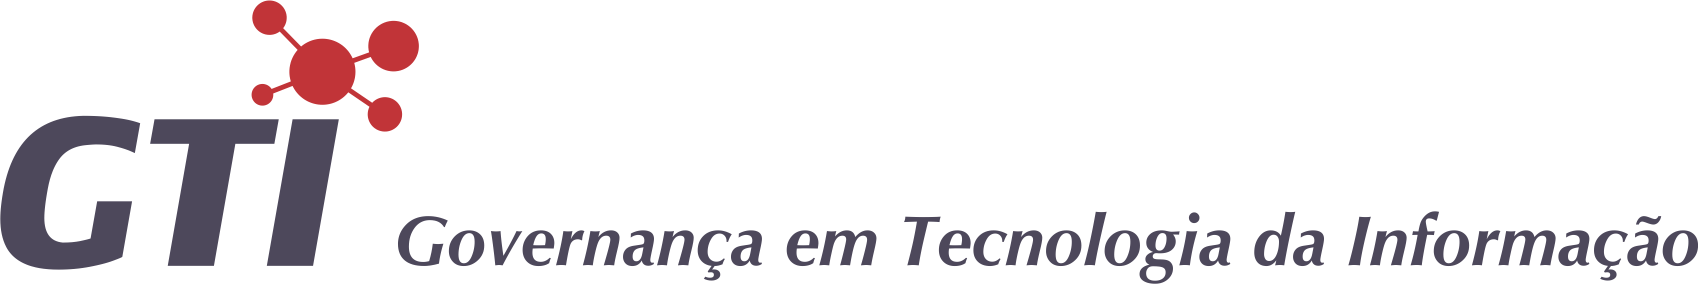 Banner topo - Governana em Tecnologia da Informao